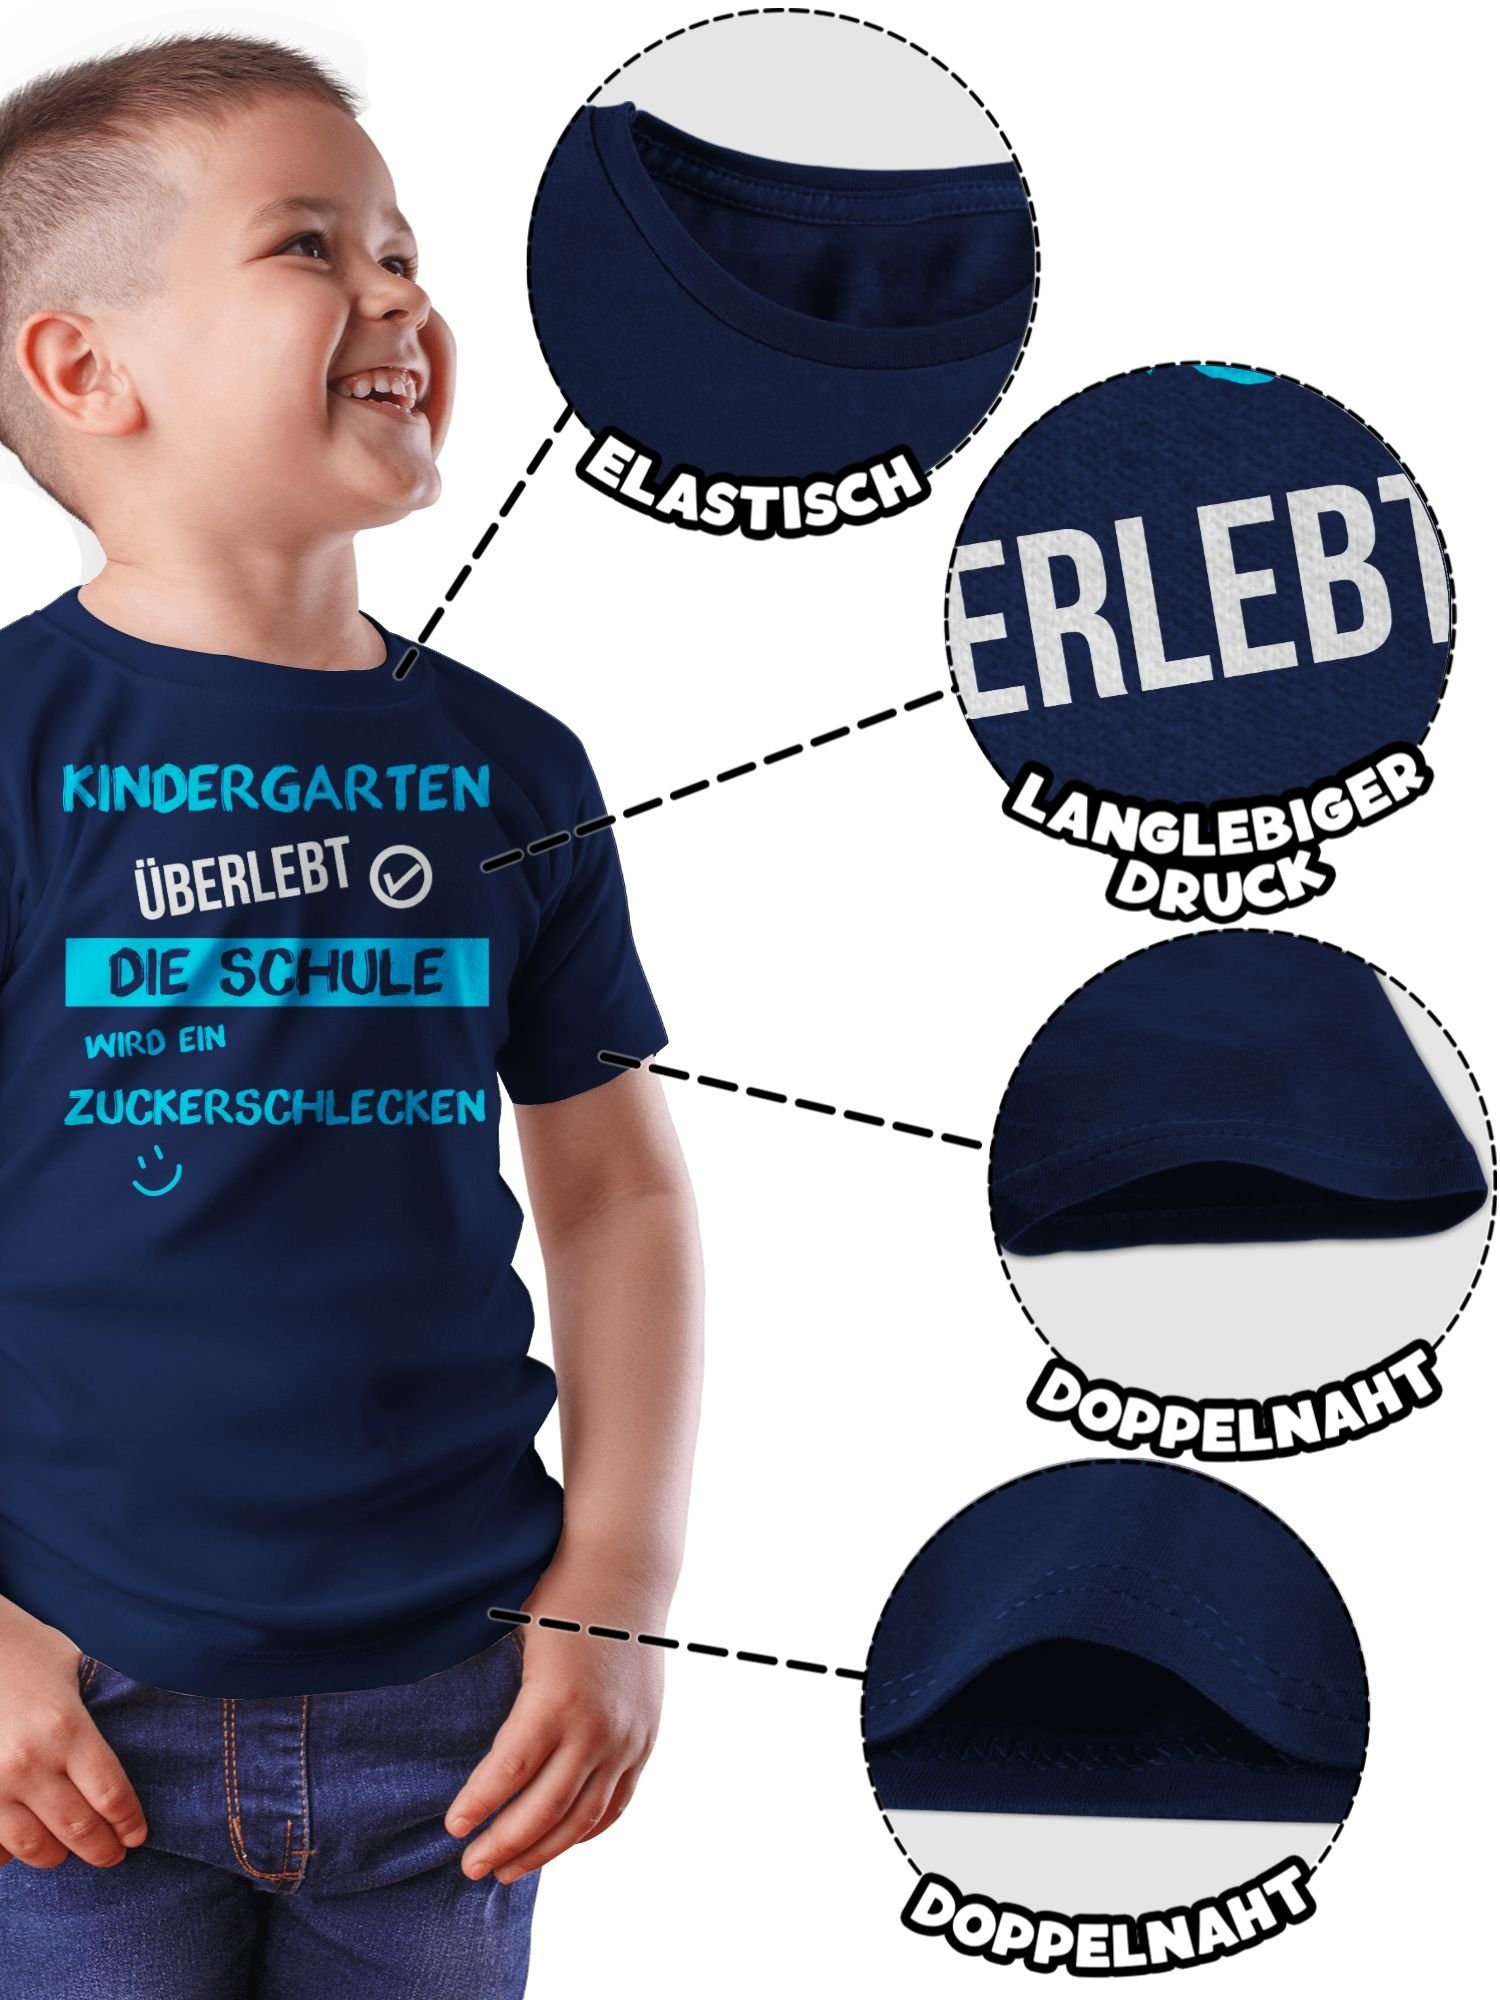 Schulanfang überlebt blau 1 T-Shirt Dunkelblau Emoticon Junge Shirtracer Kindergarten Geschenke Einschulung